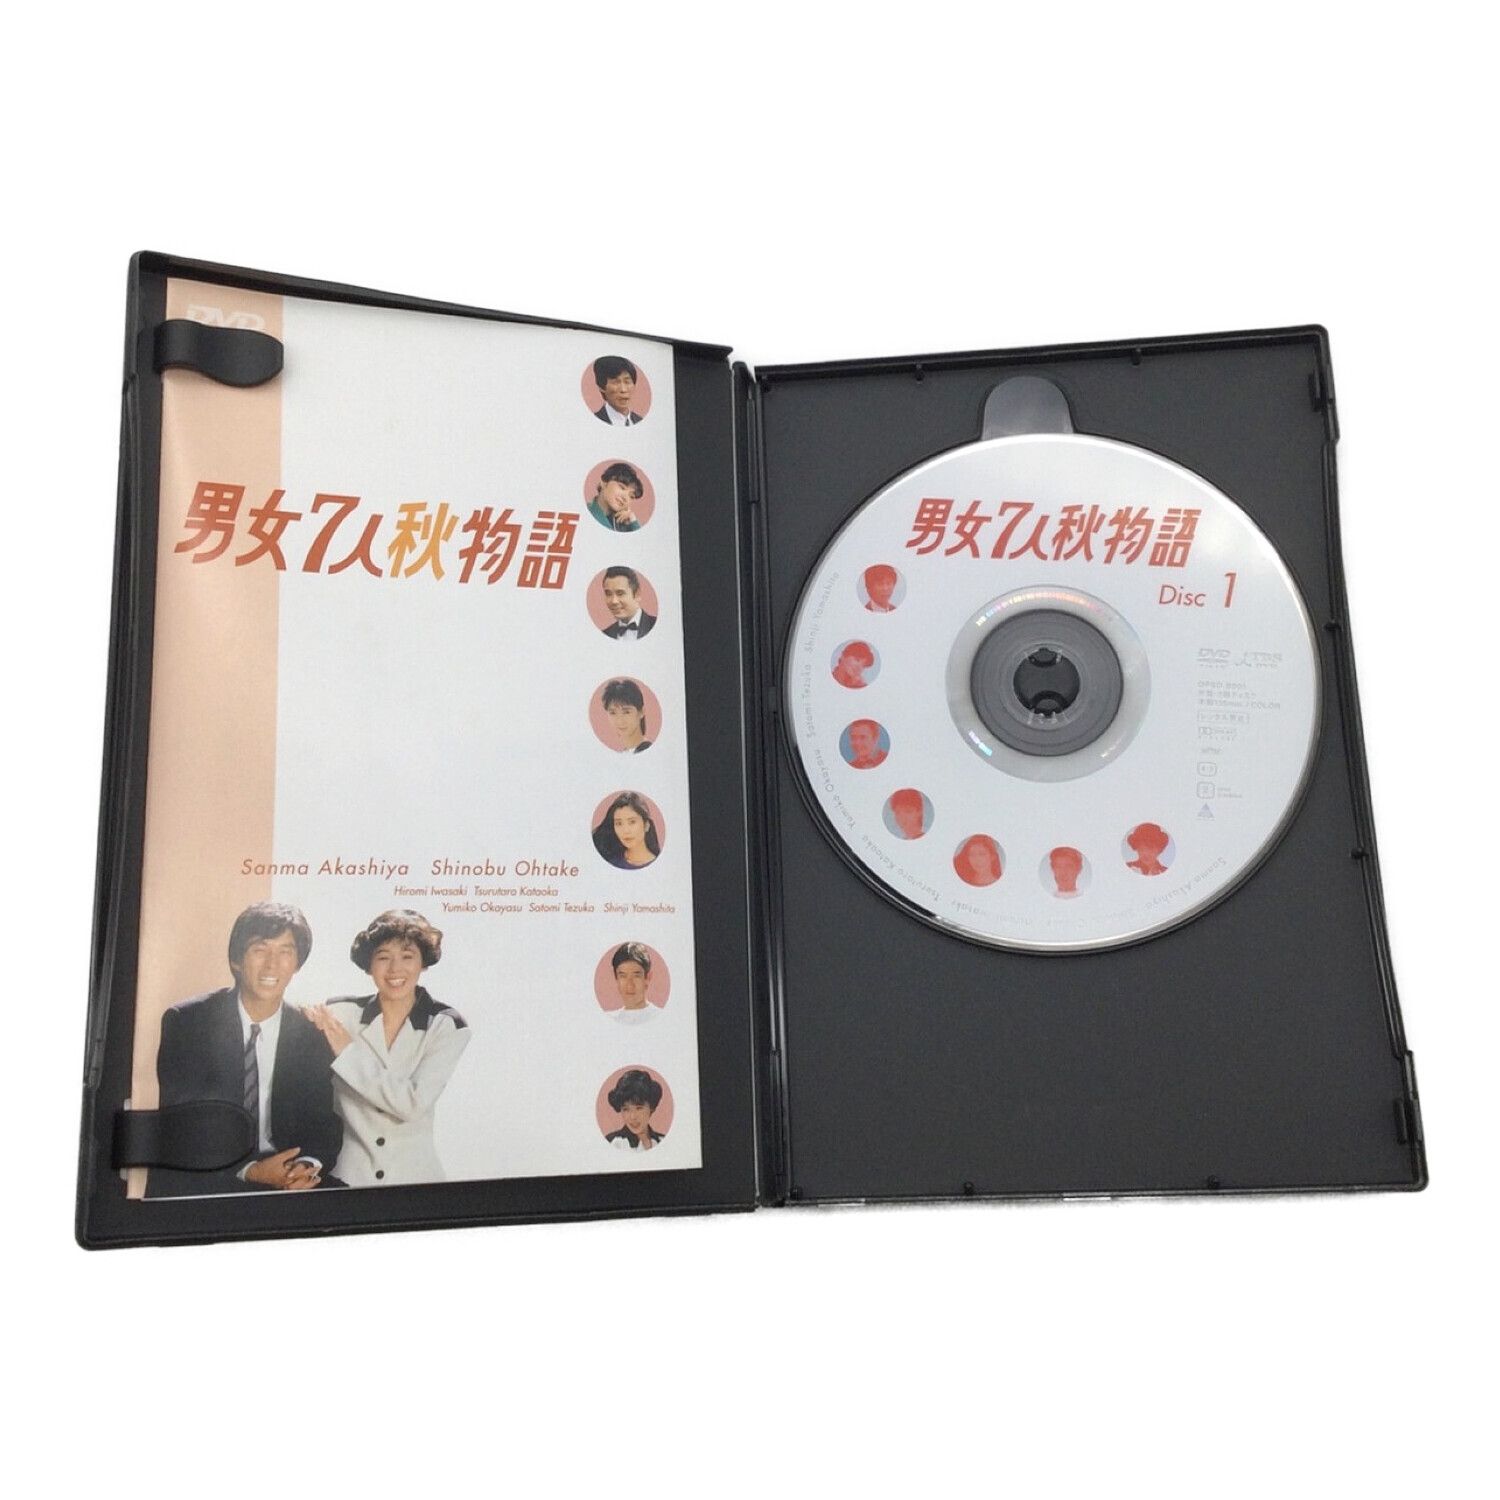 男女７人夏物語 DVD-BOX ＆ 男女７人秋物語 DVD-BOX セット - TVドラマ